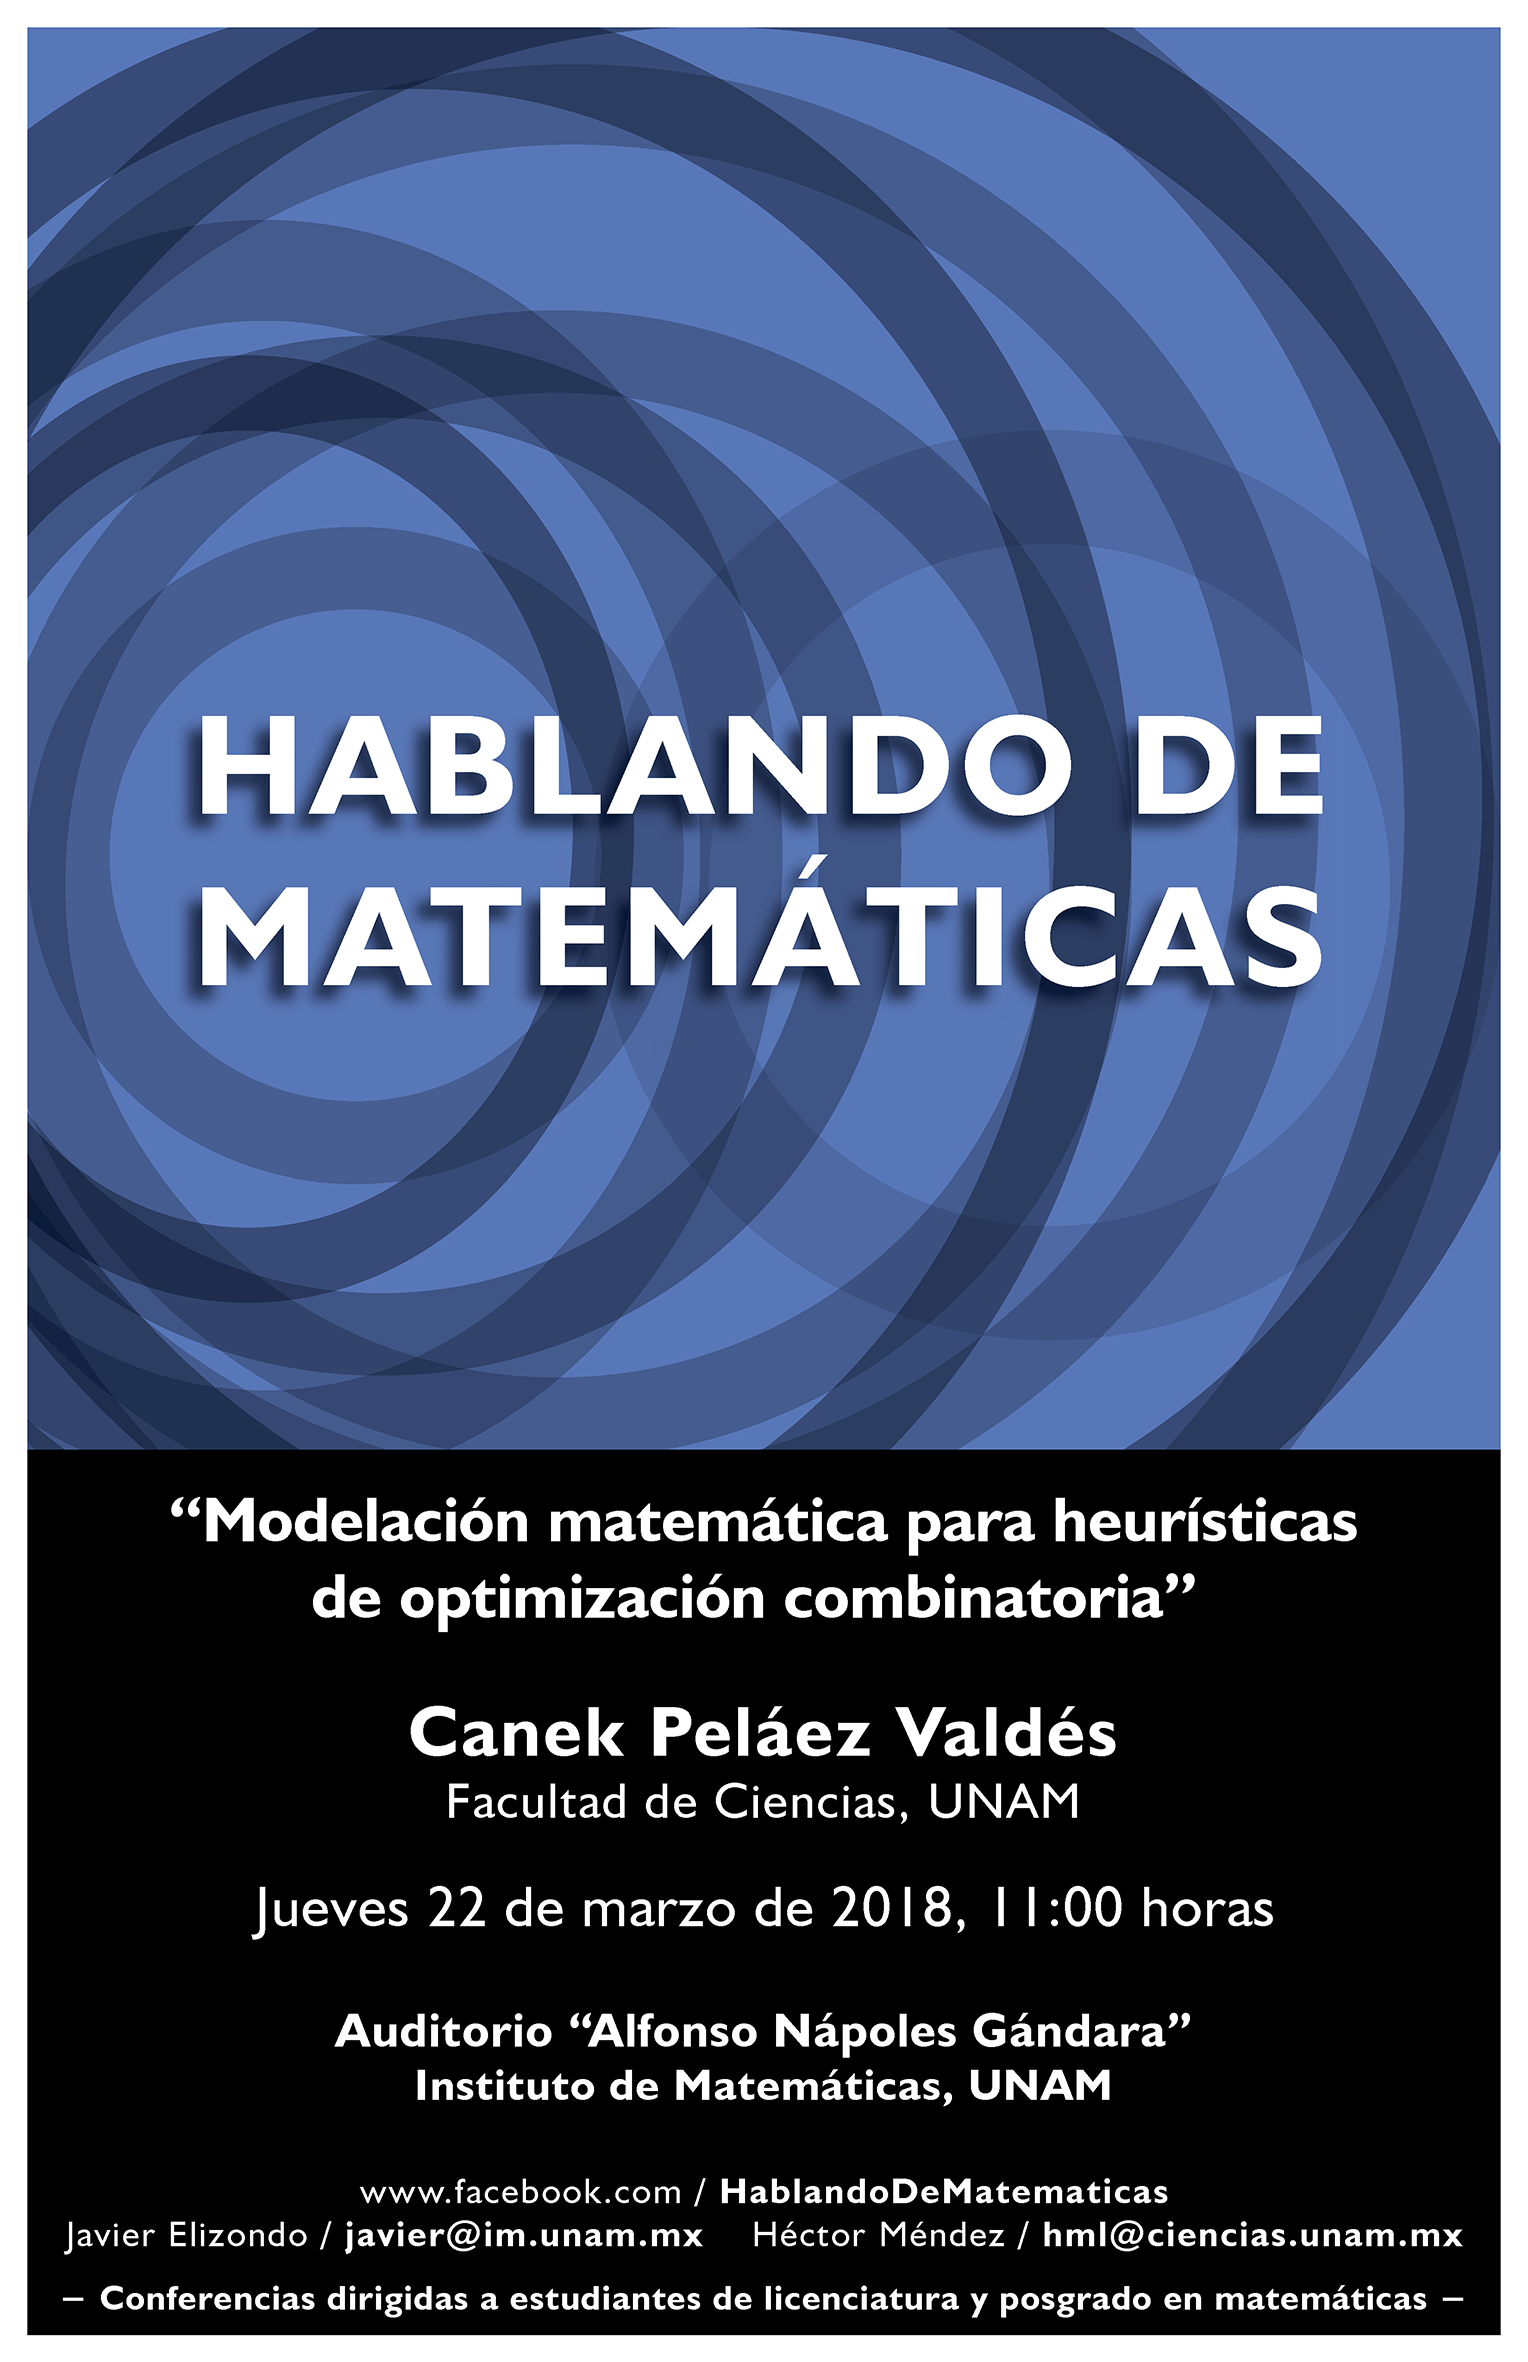 Hablando de Matemáticas: Canek Peláez Valdés Facultad de Ciencias, UNAM